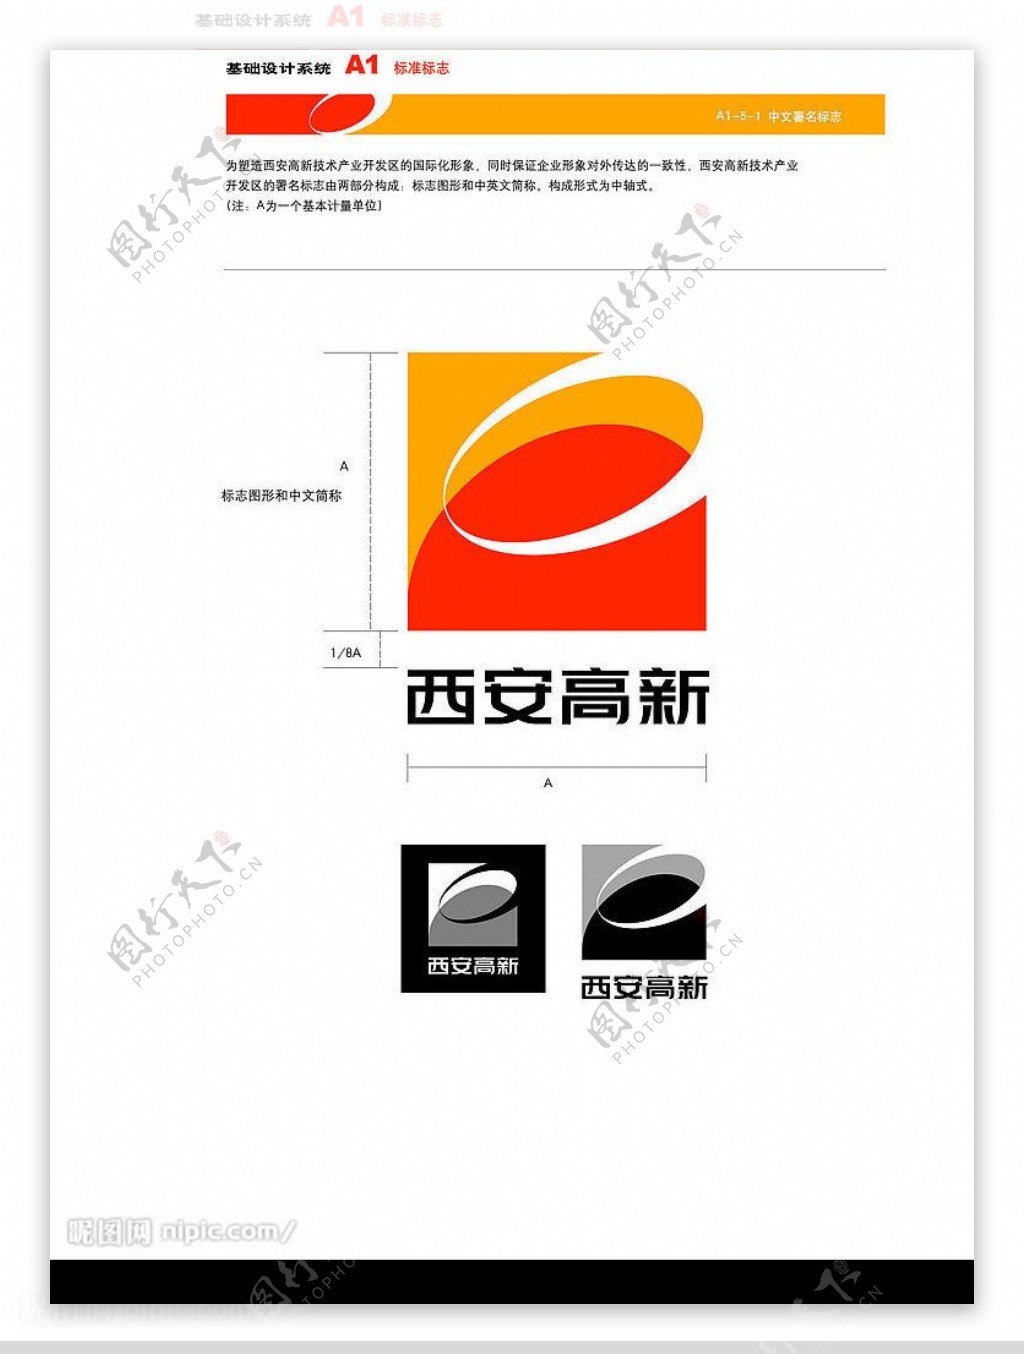 高新VIA151中文署名标志图片